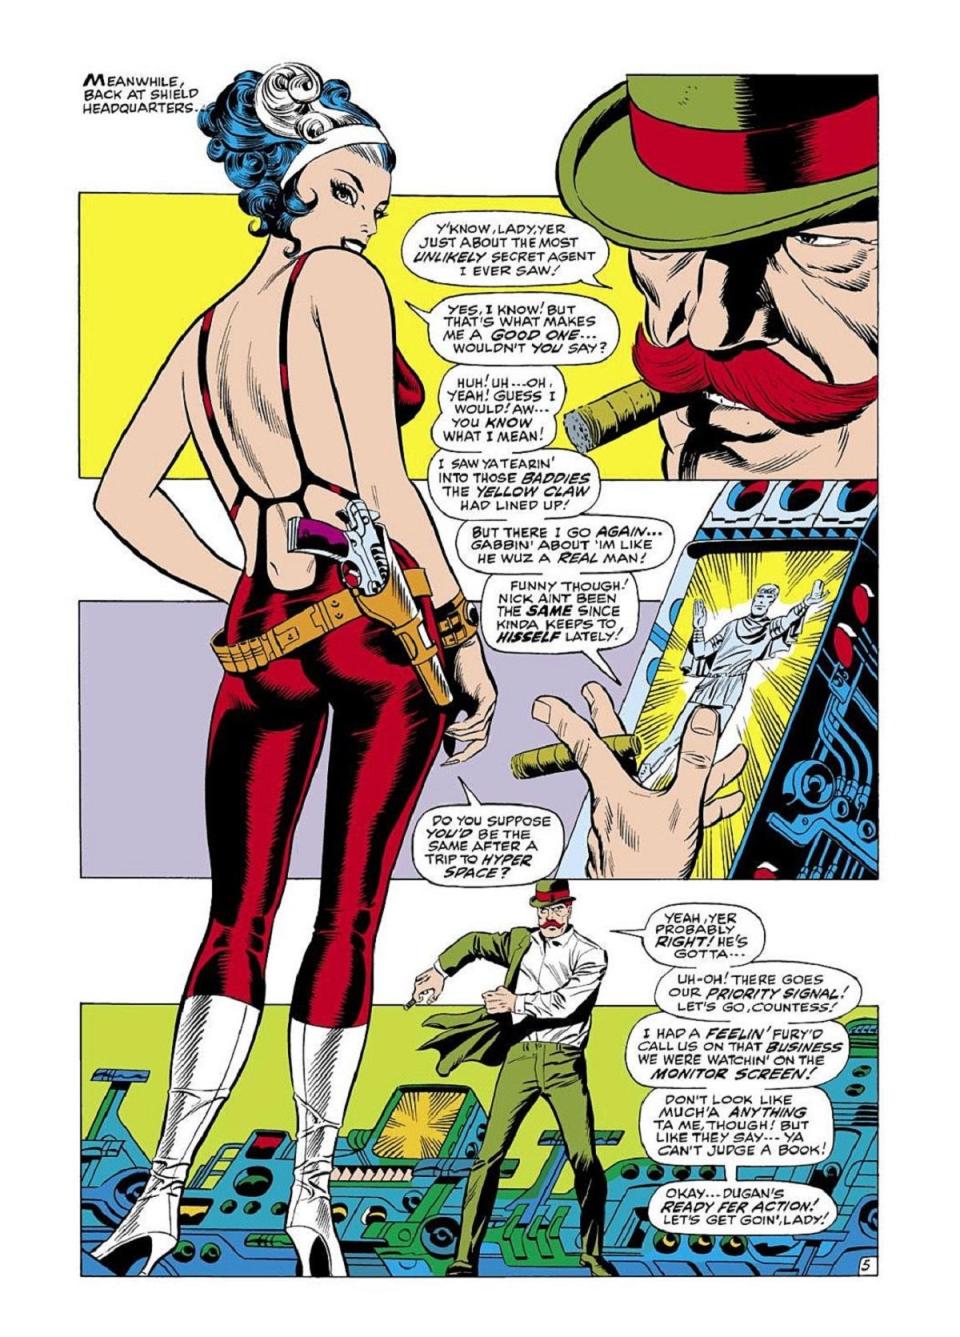 Contessa Valentina Allegra de Fontaine as a super spy for S.H.I.E.L.D. in the Silver Age of comics. 